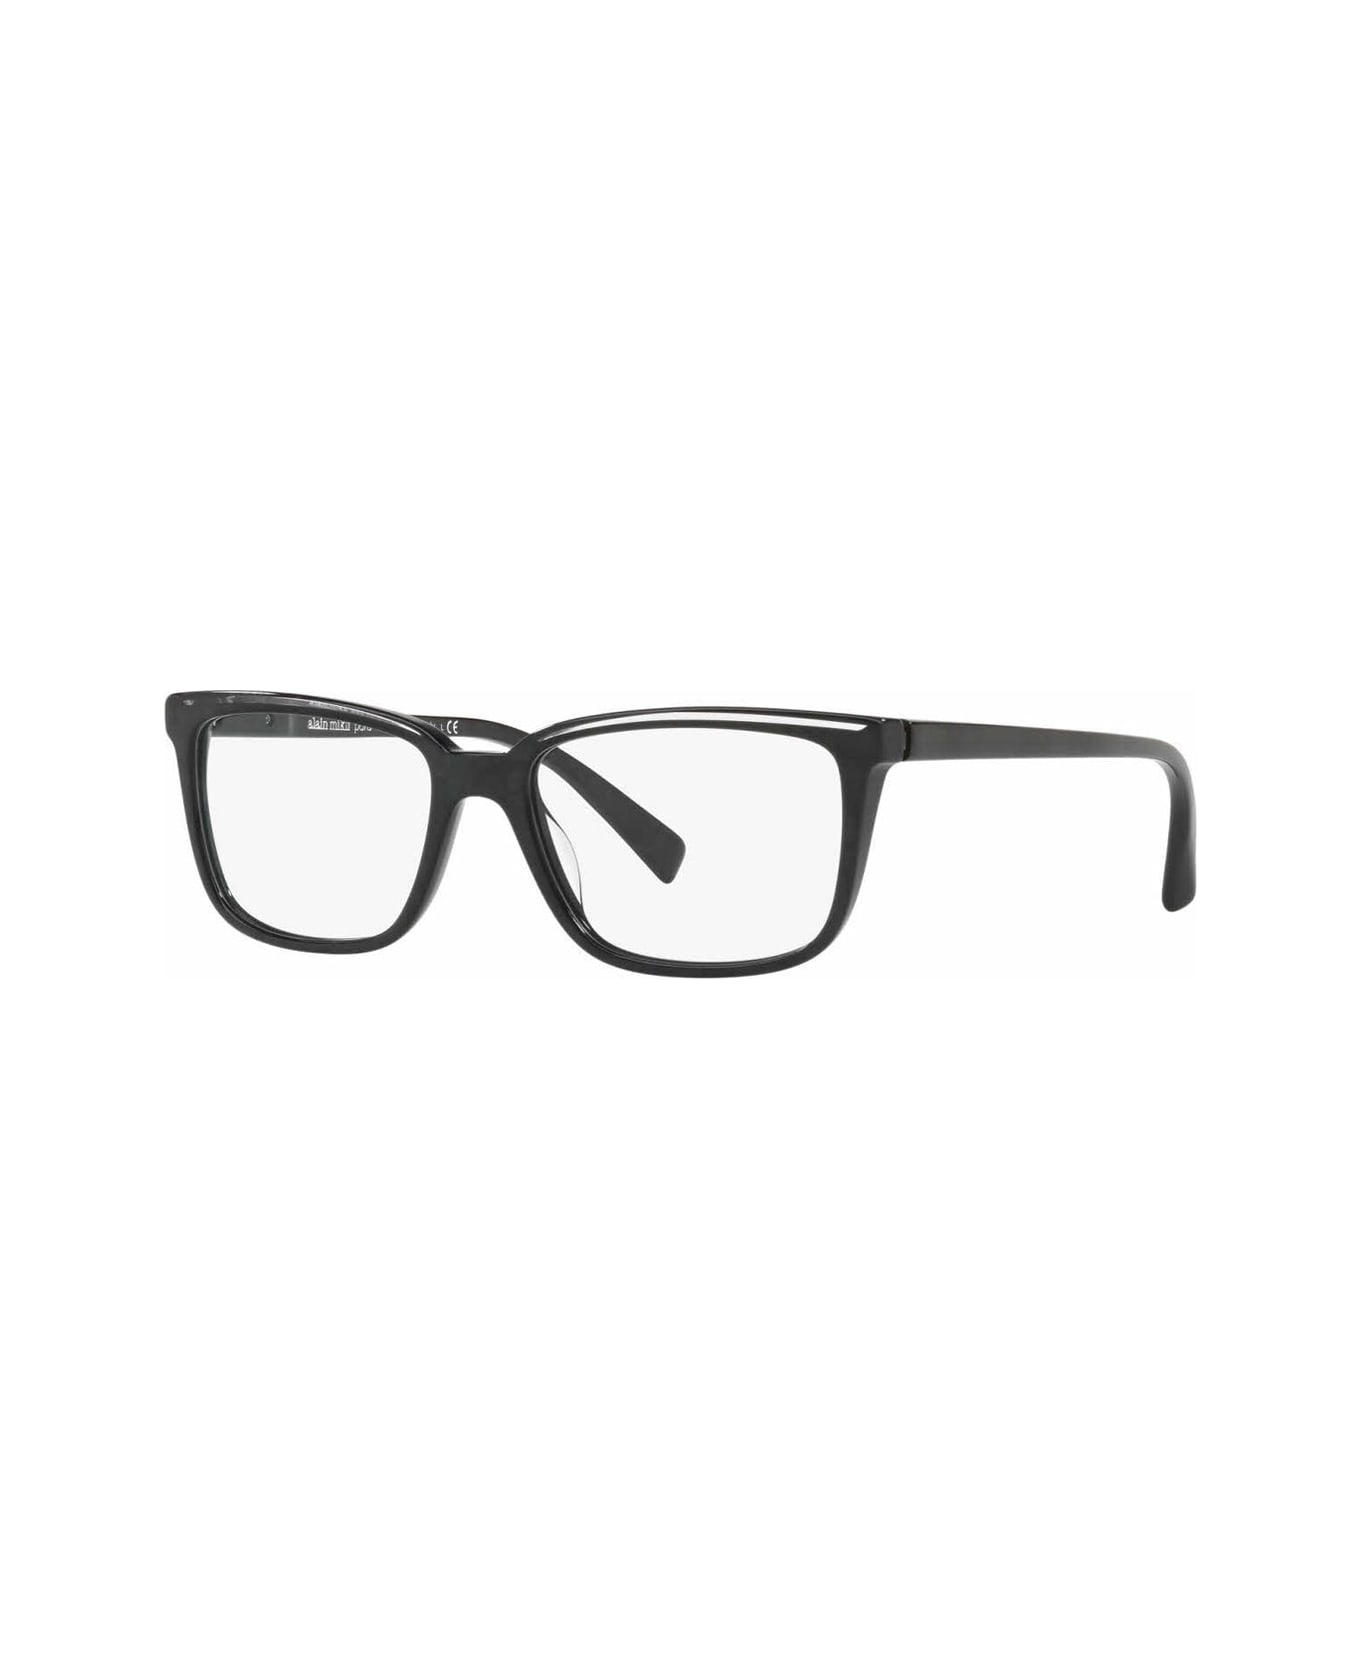 Alain Mikli A03079 Glasses - Nero